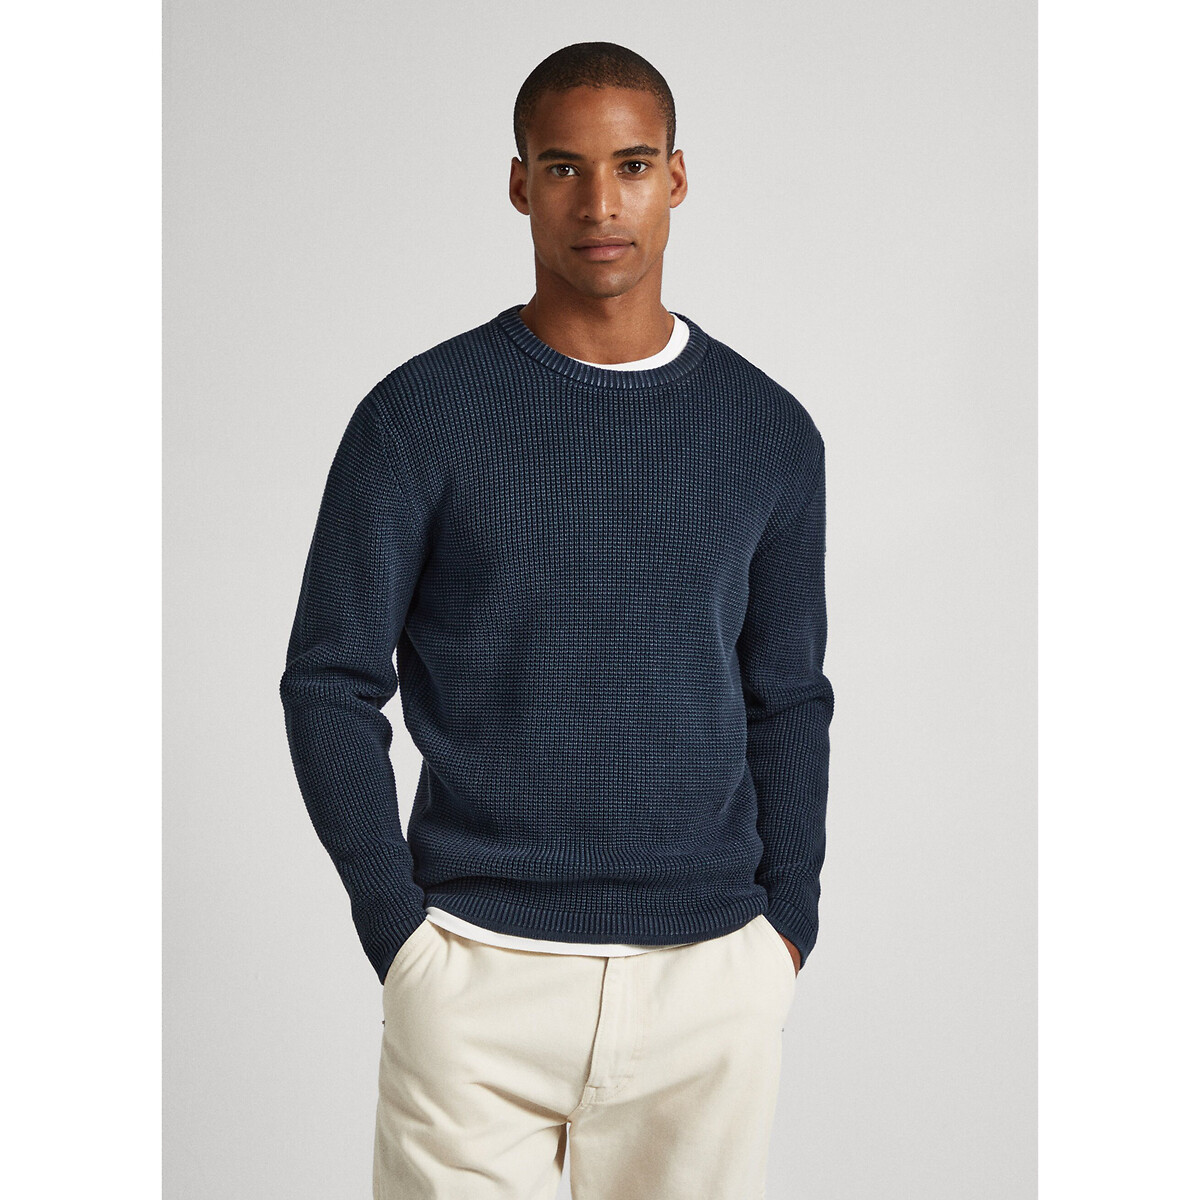 Пуловер с круглым вырезом из текстурного трикотажа Dean M синий пуловер с круглым вырезом из текстурированного трикотажа m синий